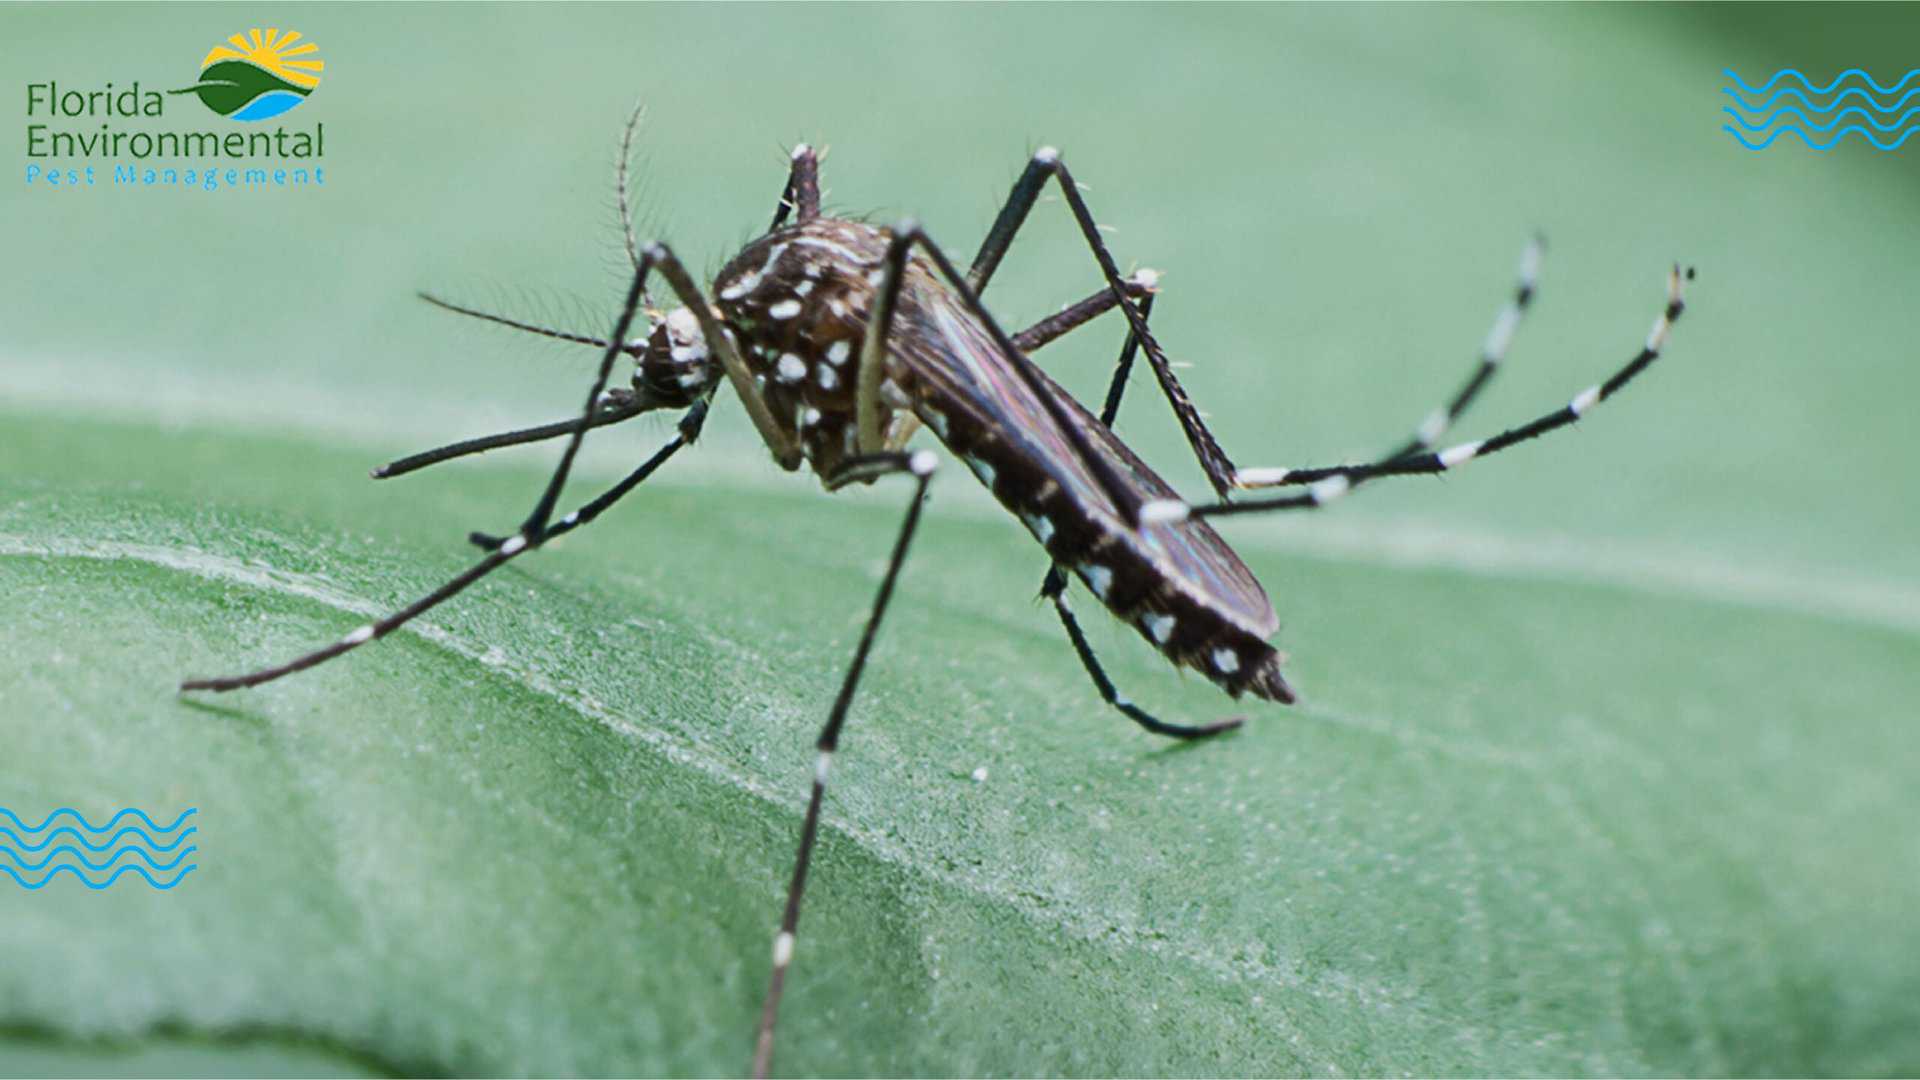 mosquitos in Florida